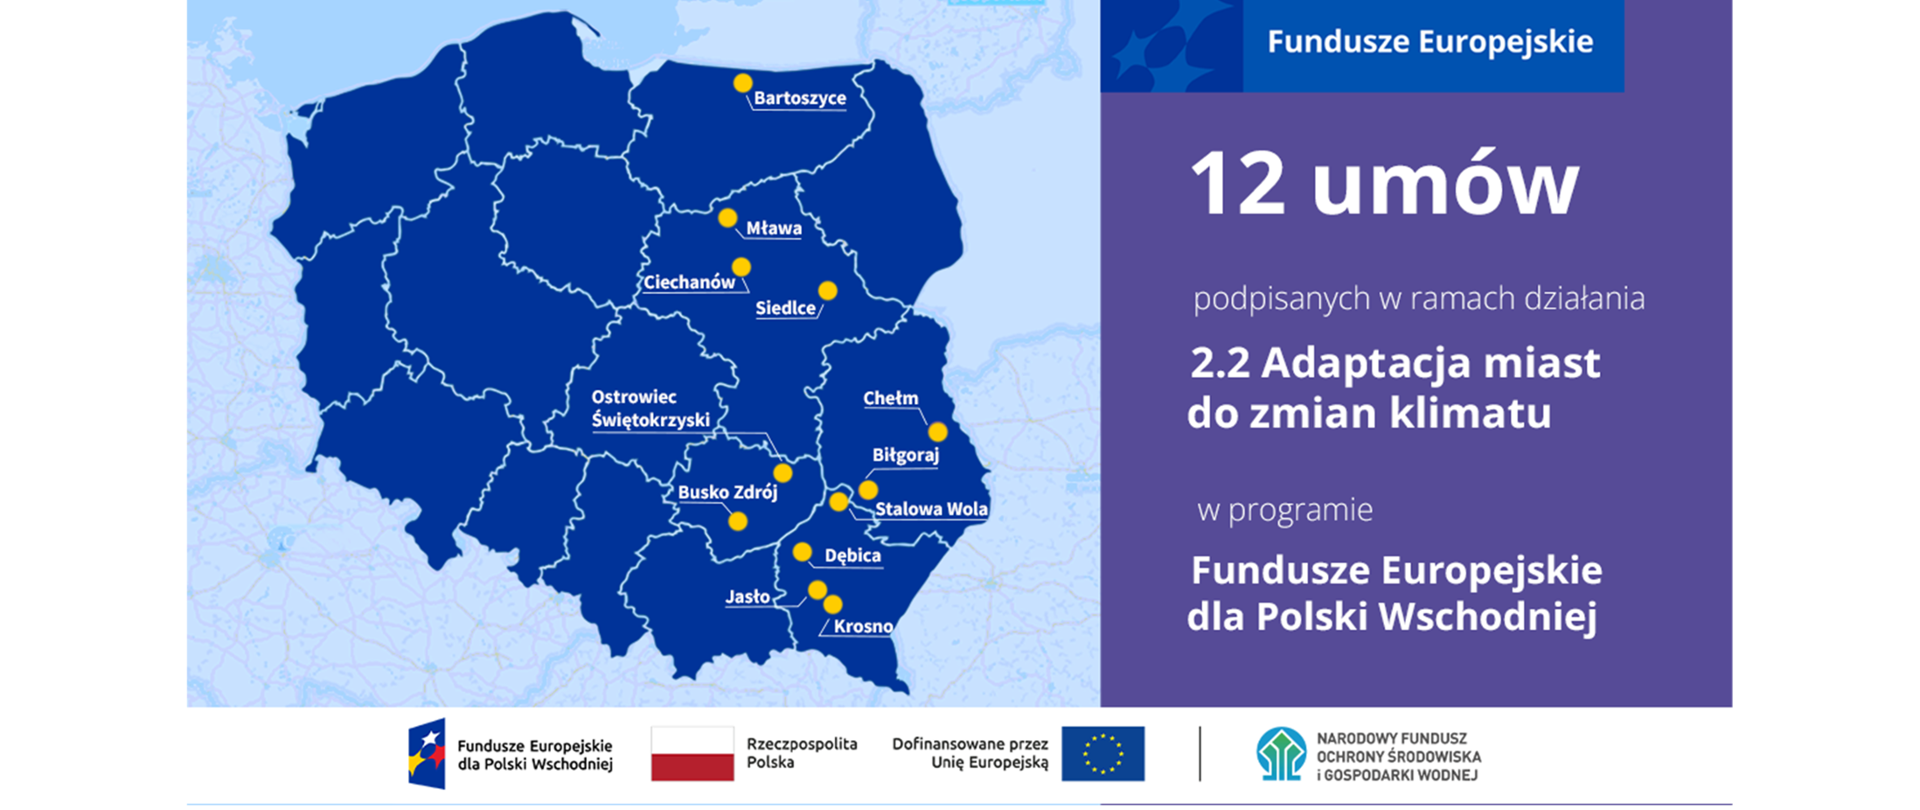 Plansza informacyjna. Fundusze Europejskie 12 umów podpisanych w ramach działania 2.2 Adaptacja do zmian klimatu w programie Fundusze Europejskie dla Polski Wschodniej